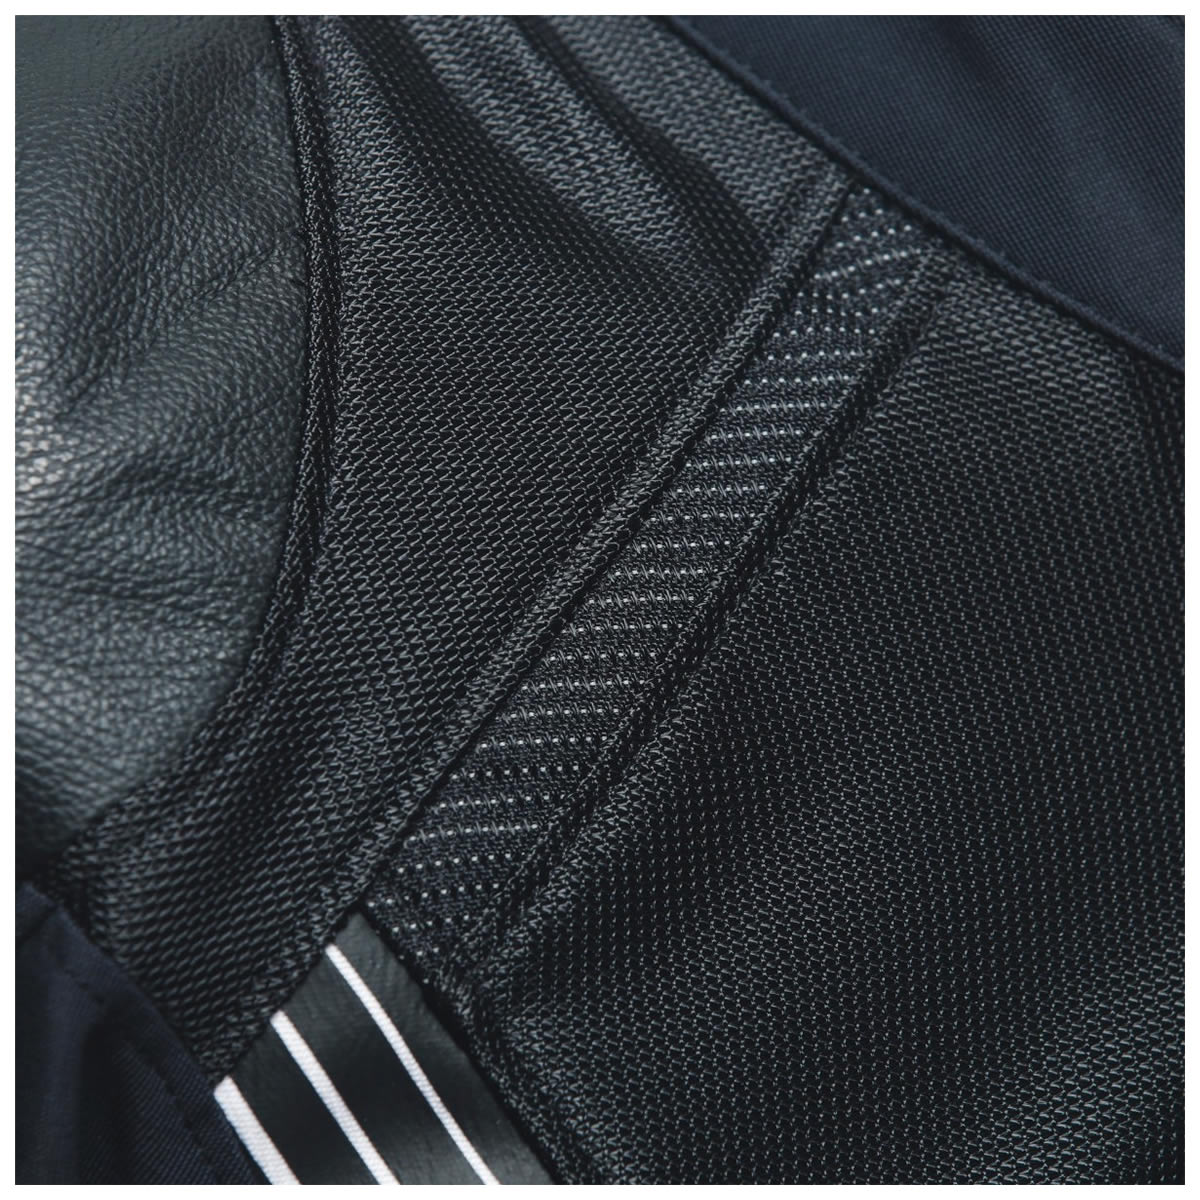 Dainese Herren Textiljacke Super Rider 2 Absoluteshell™, schwarz-weiß